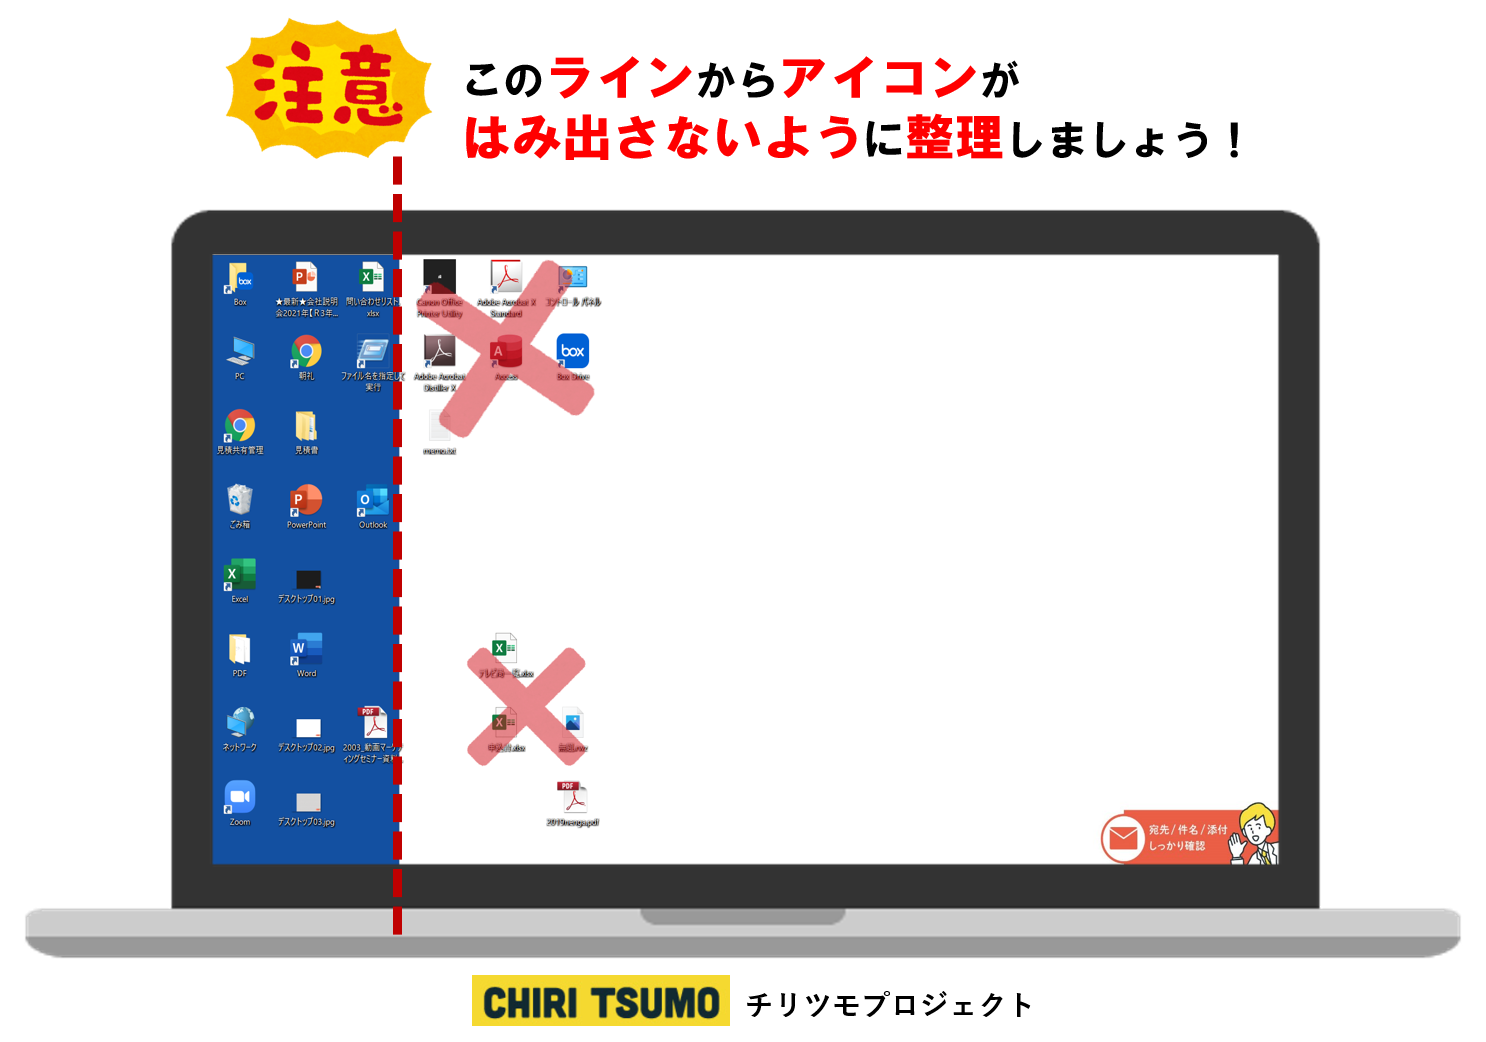 Chiri Tsumoプロジェクト No 3 デスクトップの乱れは心の乱れ 壁紙で整理整頓しよう Sdgs 持続可能な取り組み 名古屋 東京の広告代理店 エムズコーポレーション